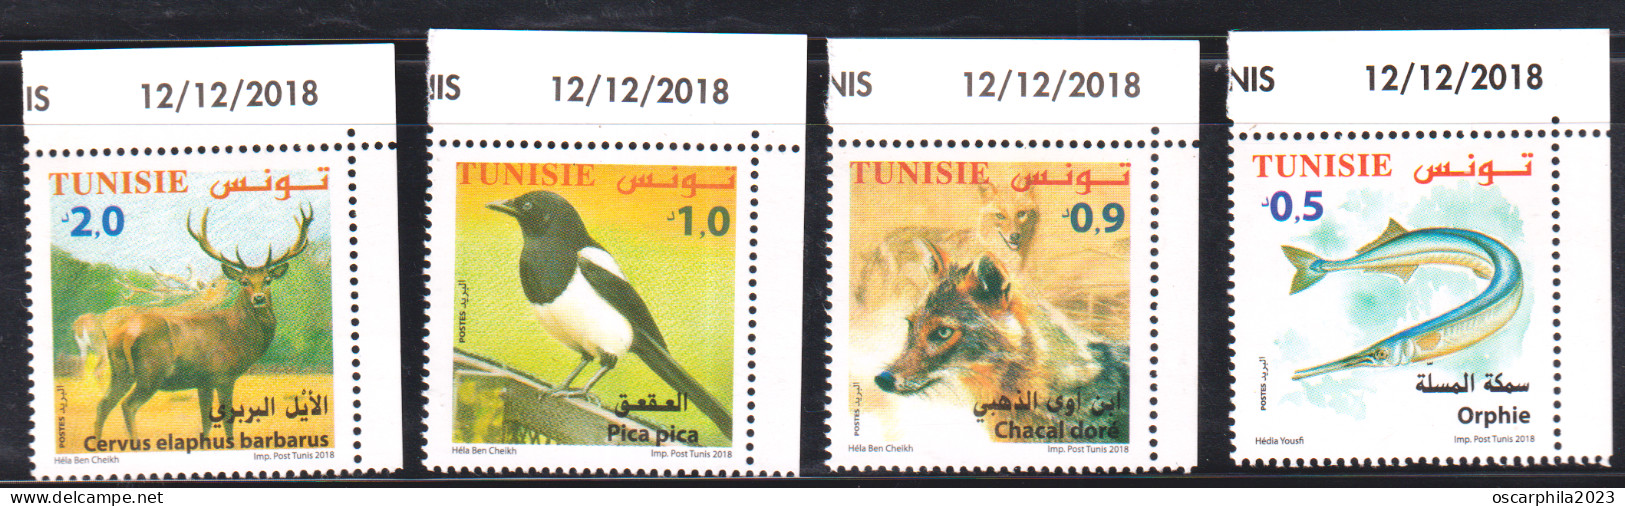 2018-Tunisie- Faune Terrestre, Maritime-Orphie, Chacal Doré, Pica Pica, Cervus Elaphus -4V S.C Coin Daté -MNH***** - Climbing Birds